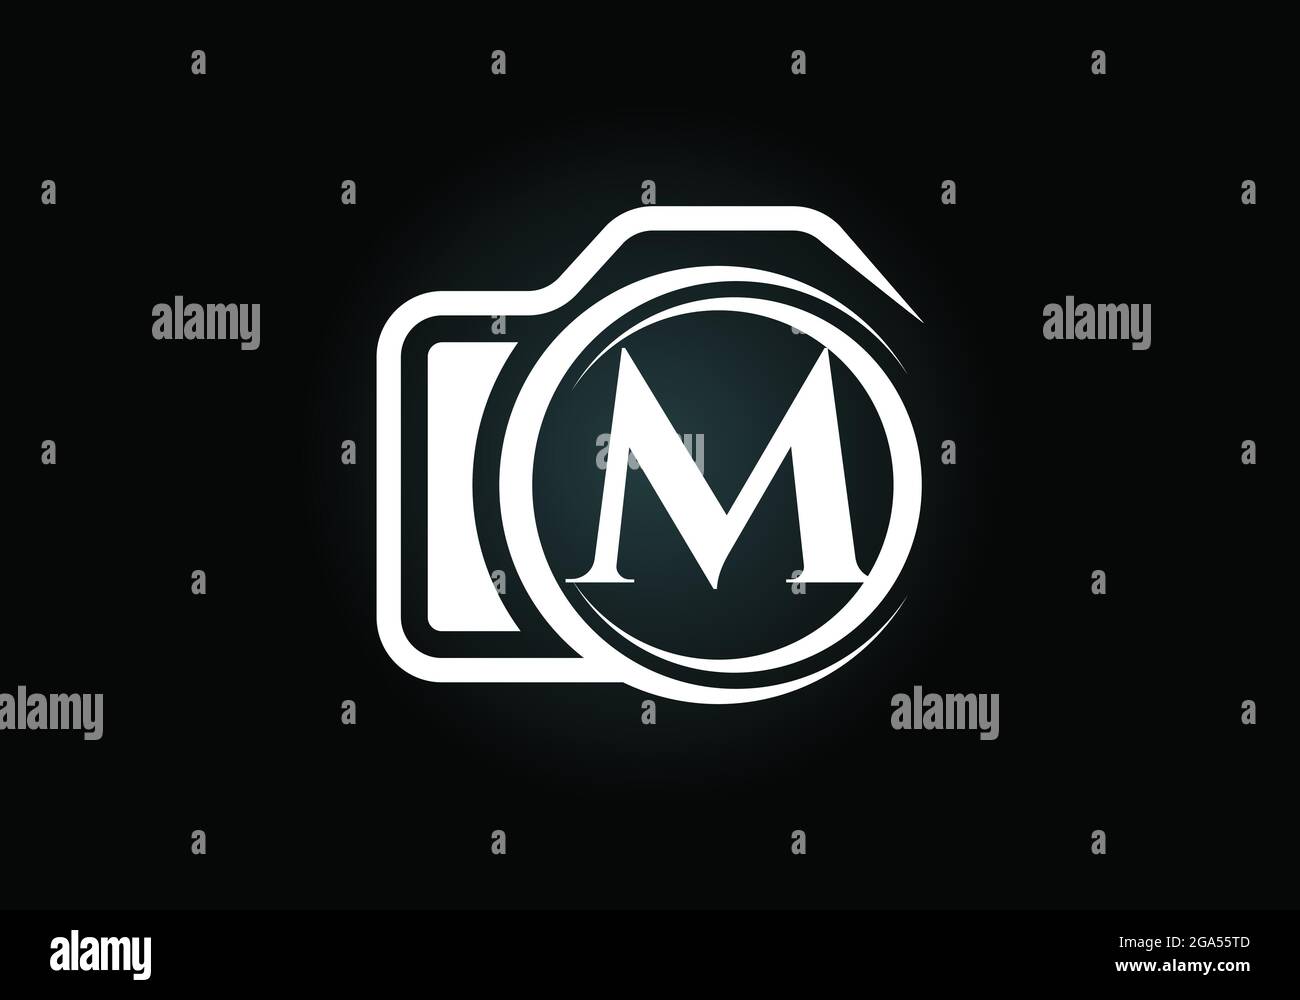 Lettera iniziale M monogramma con l'icona di una telecamera. Immagine vettoriale del logo fotografico. Design moderno del logo per il settore della fotografia e l'azienda Illustrazione Vettoriale